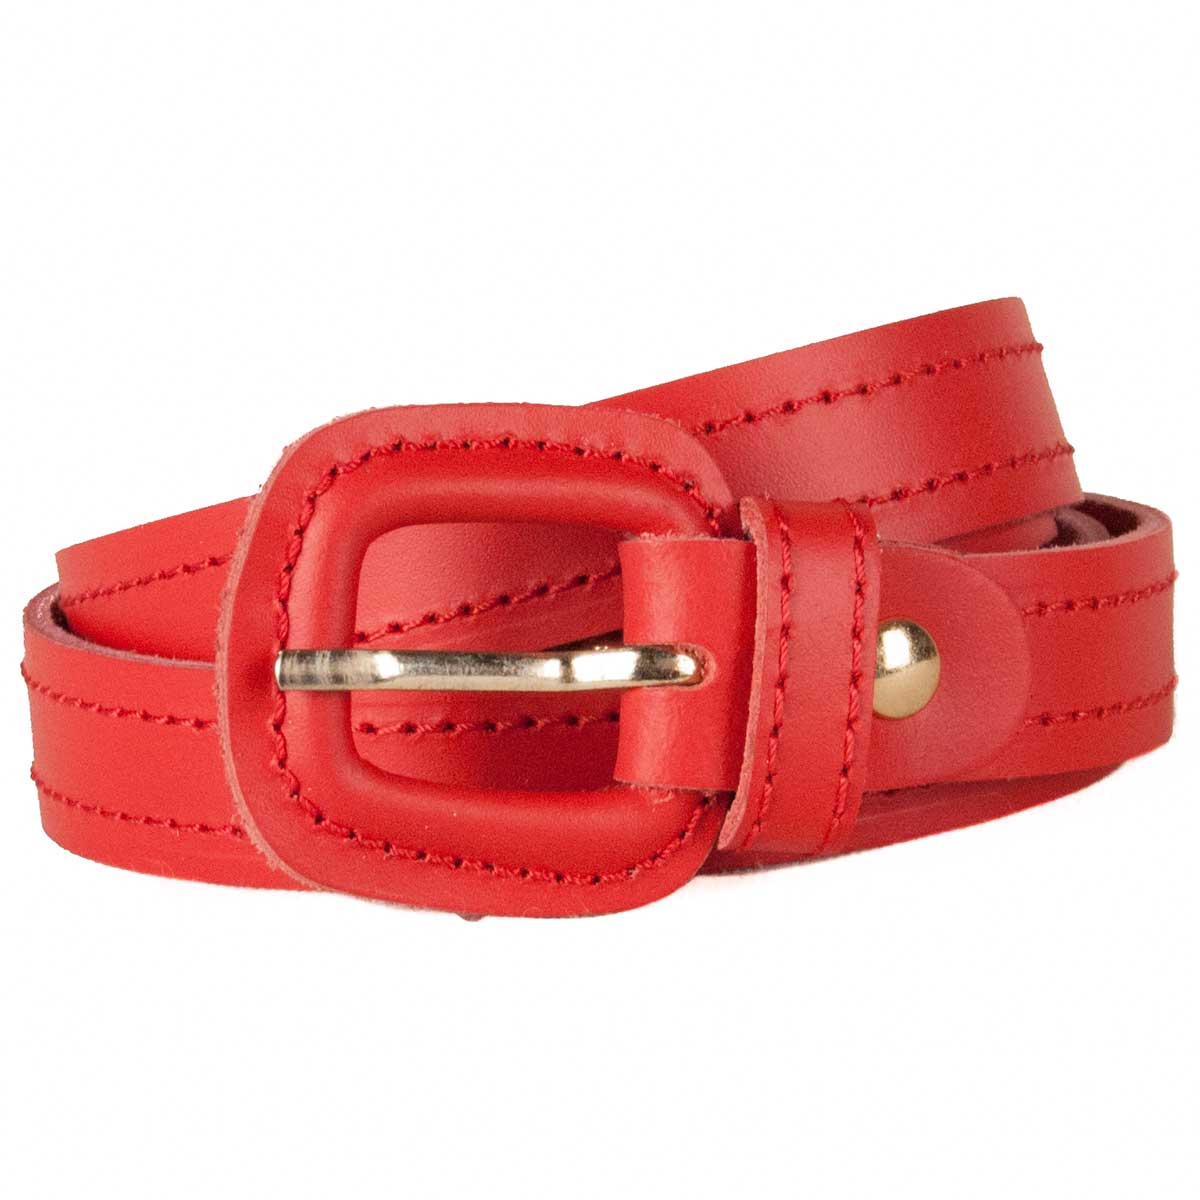 Cinturon Fino De Mujer Color Rojo De Piel, Elegante Hebilla Forrada, Adaptable. Rojo | Bozoom